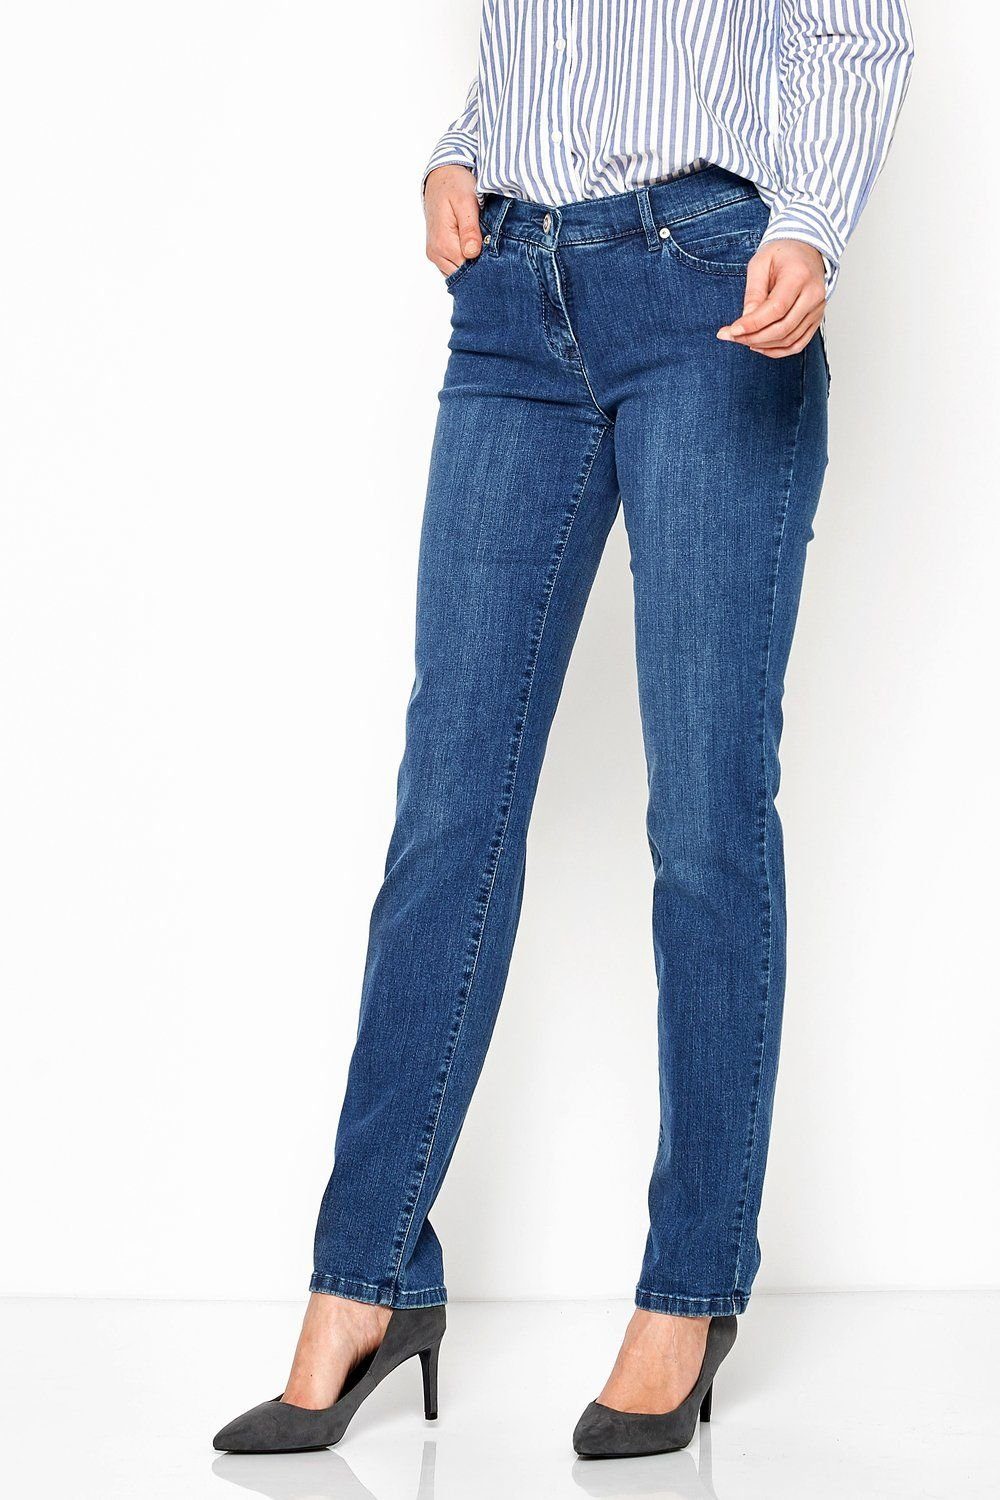 mid 5-Pocket-Jeans blue TONI used